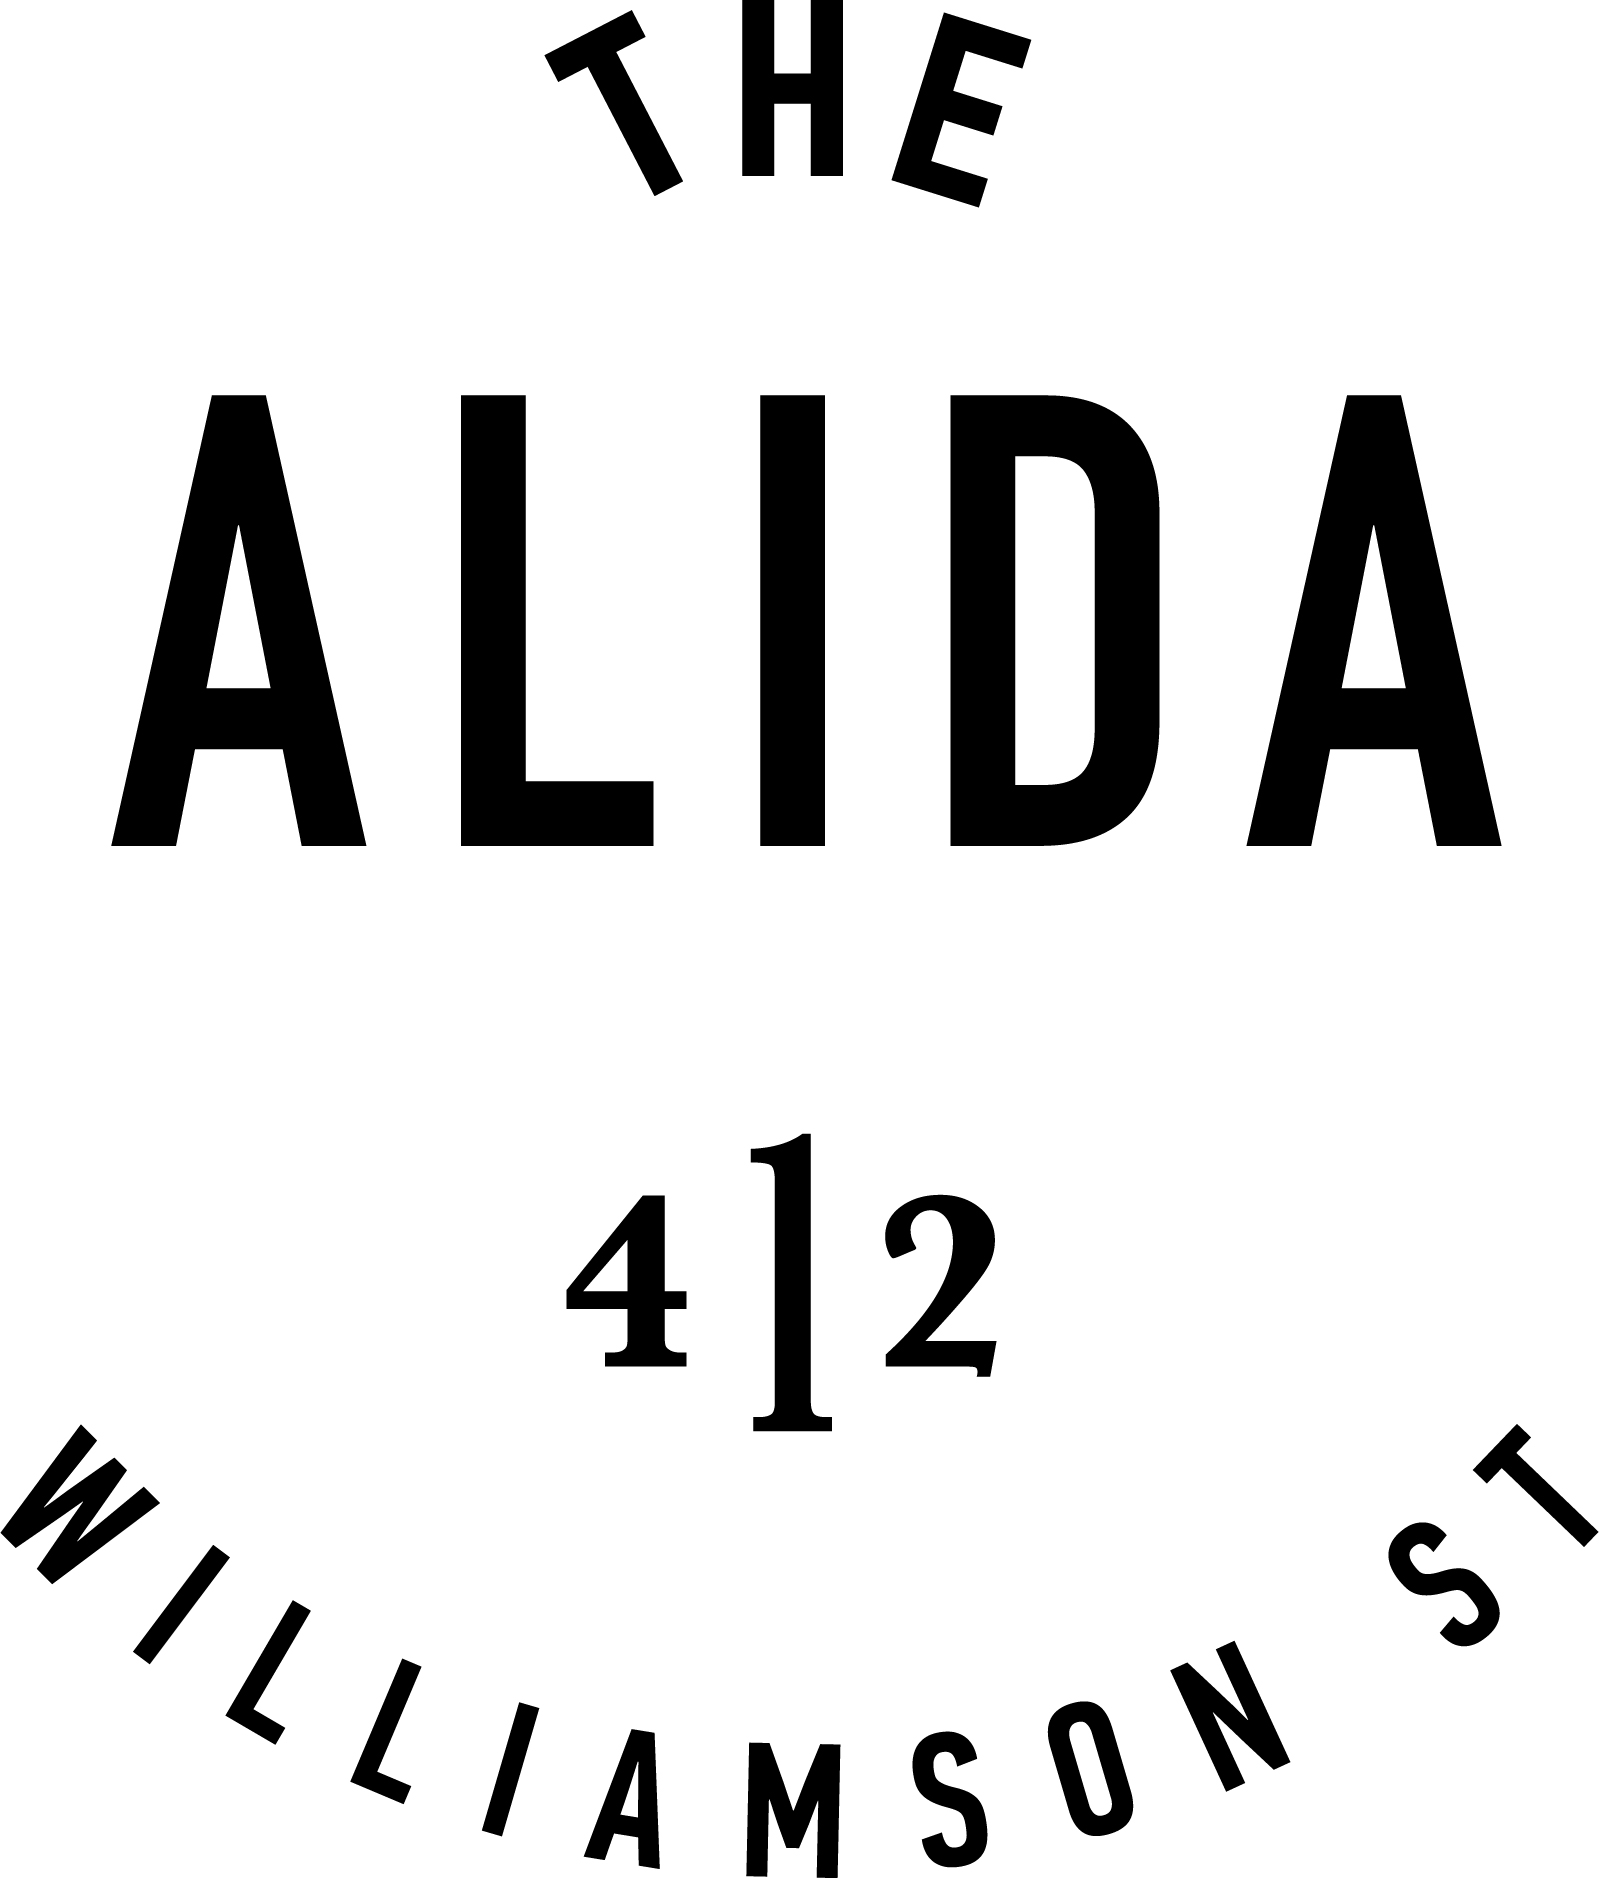 The Alida Sa
 vannah logo